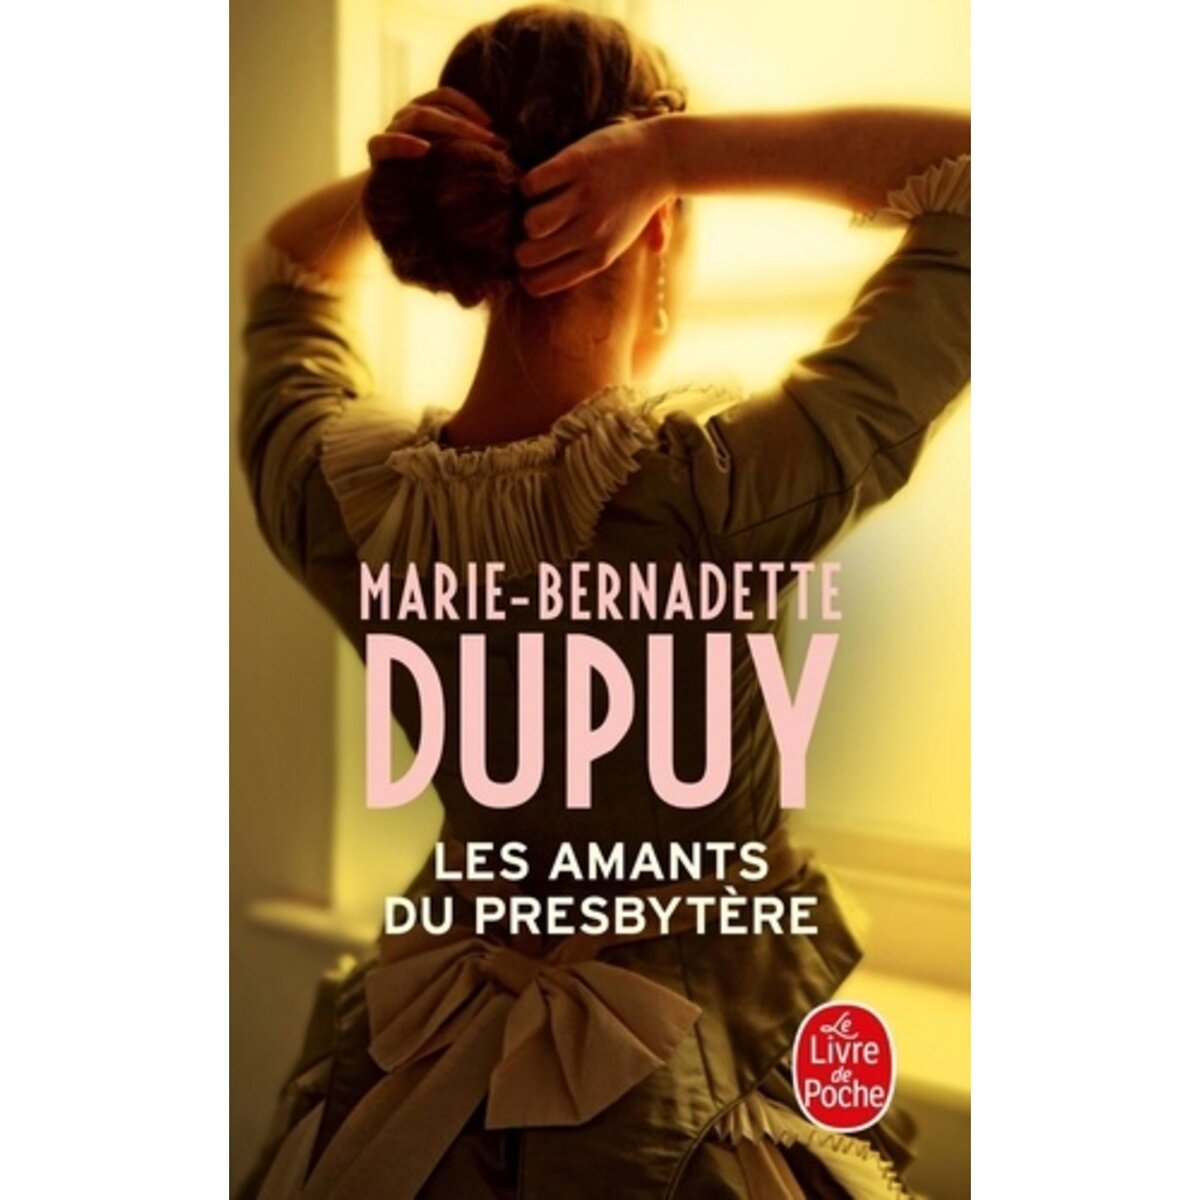  LES AMANTS DU PRESBYTERE, Dupuy Marie-Bernadette